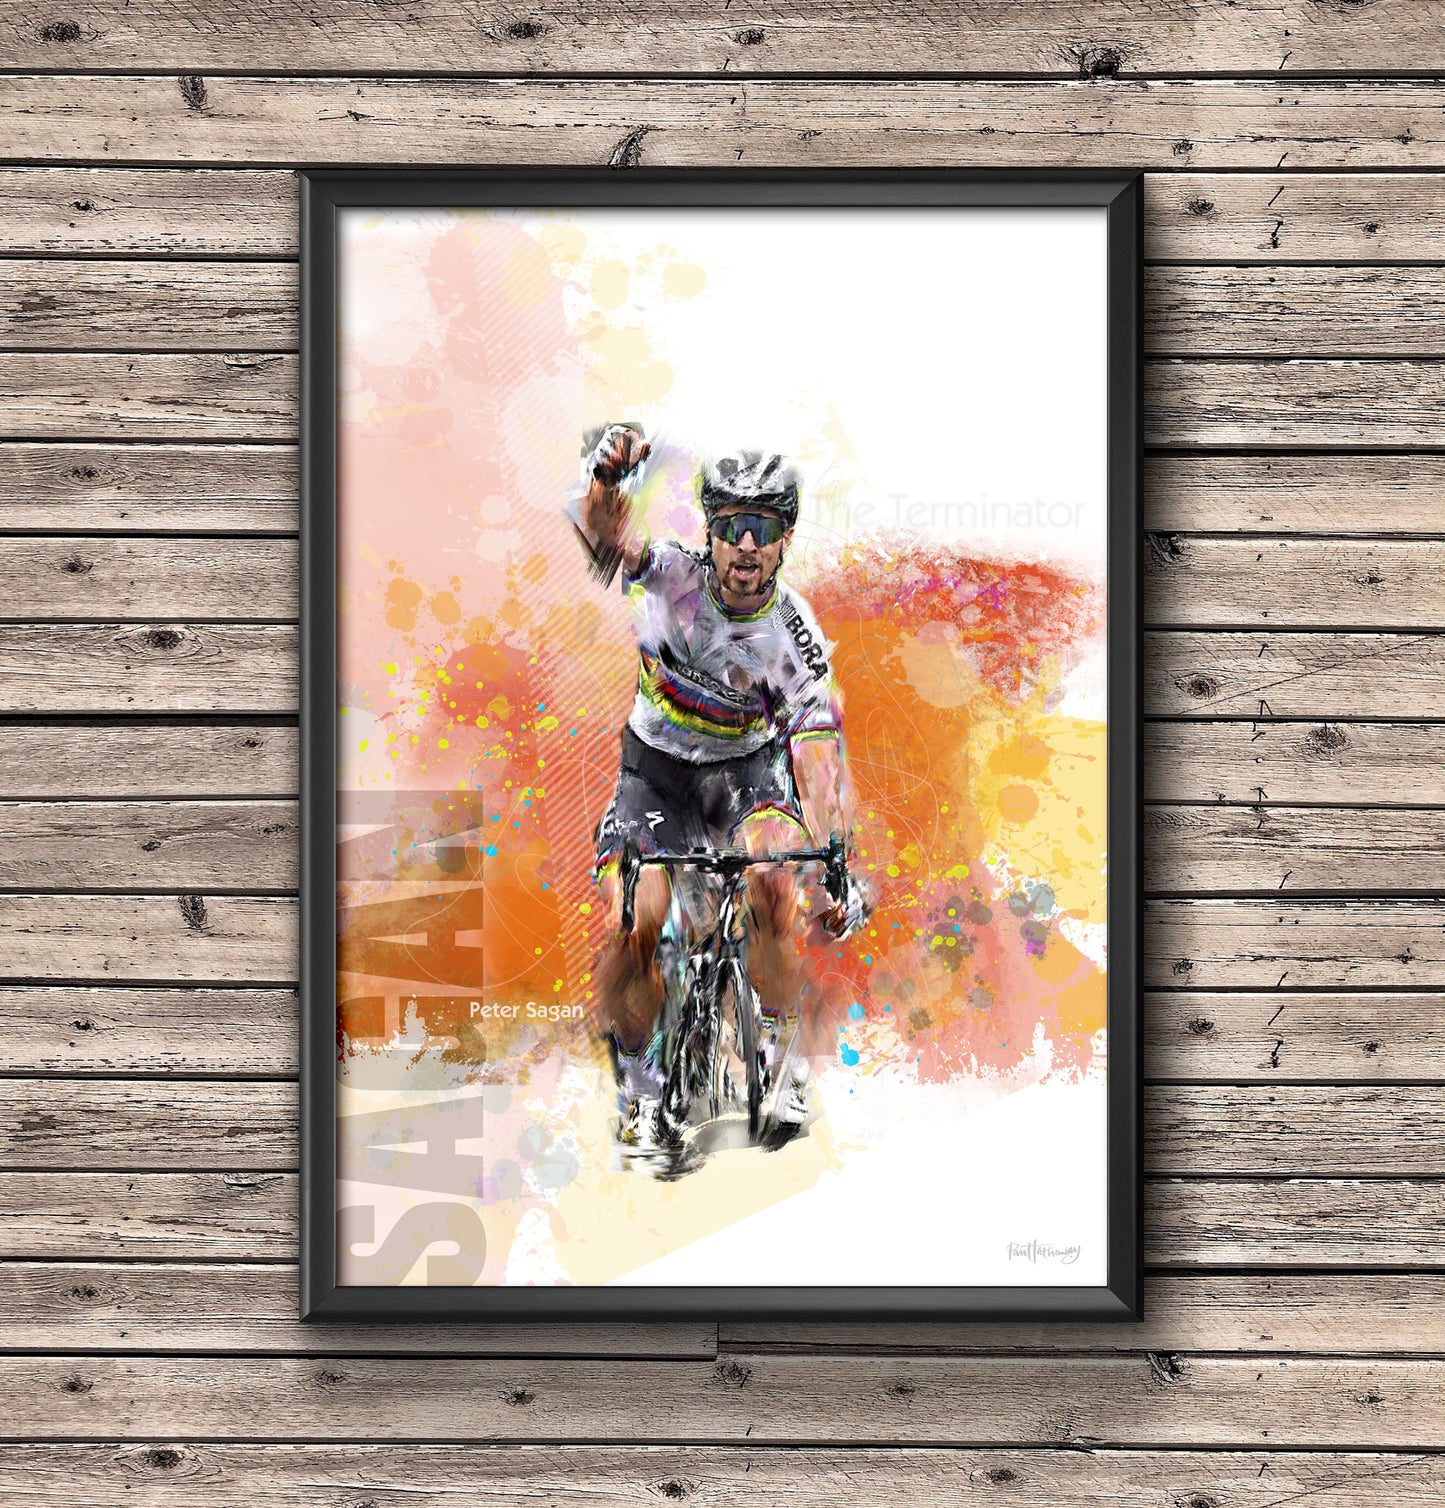 Peter Sagan - Cycling Art Print - Option 1